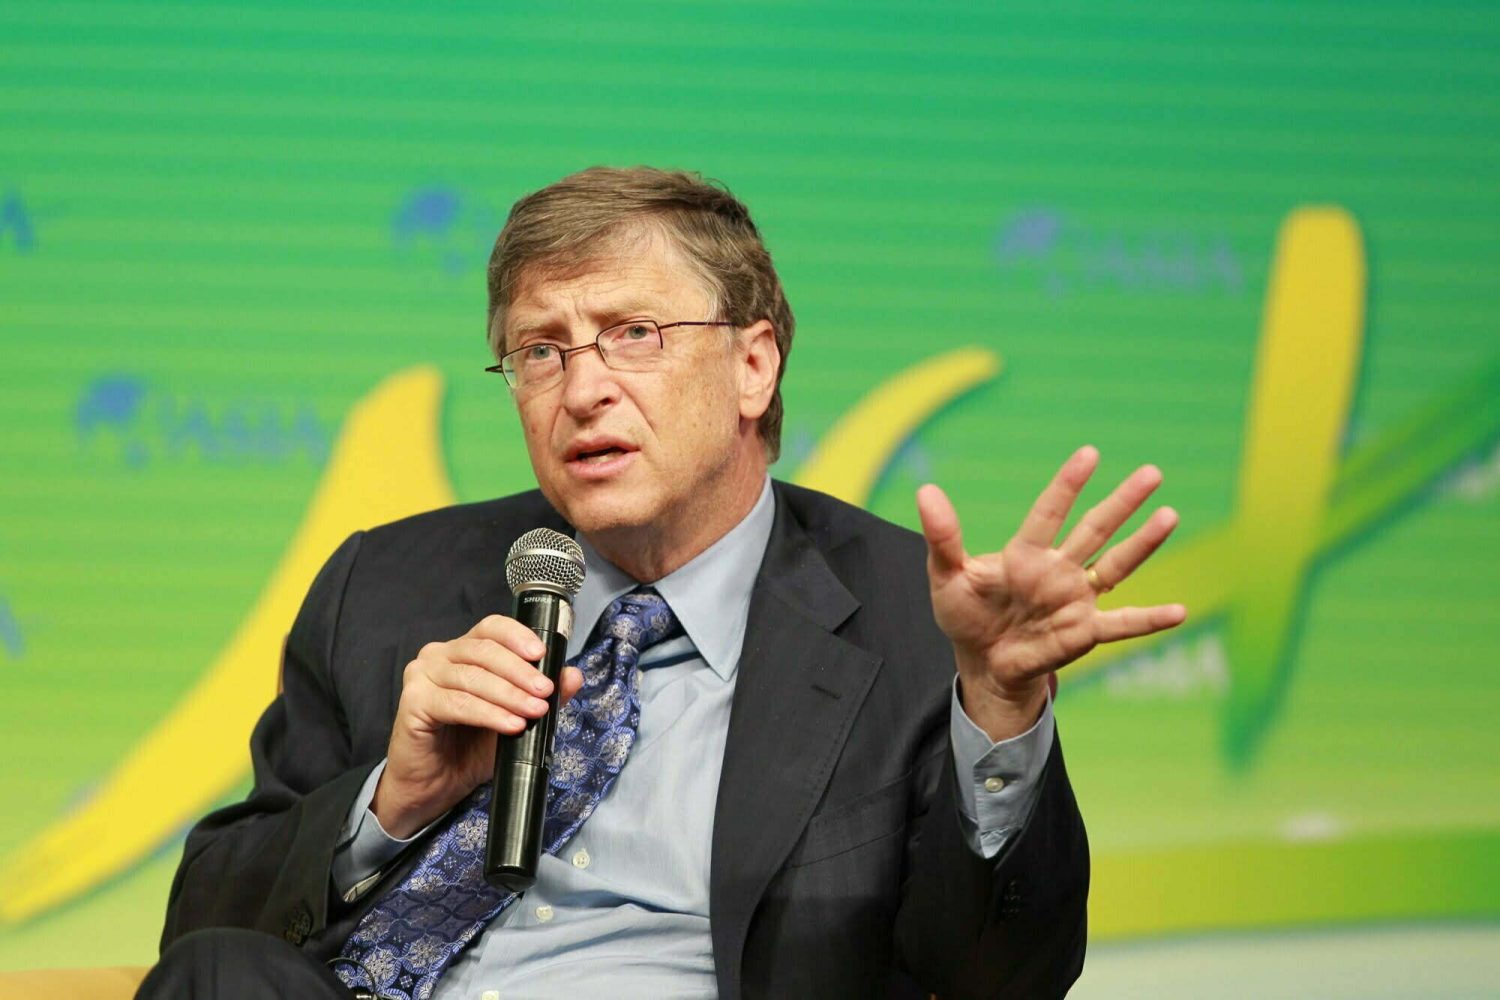 Bill y Melinda Gates / COVID-19 - Inteligencia Artificial